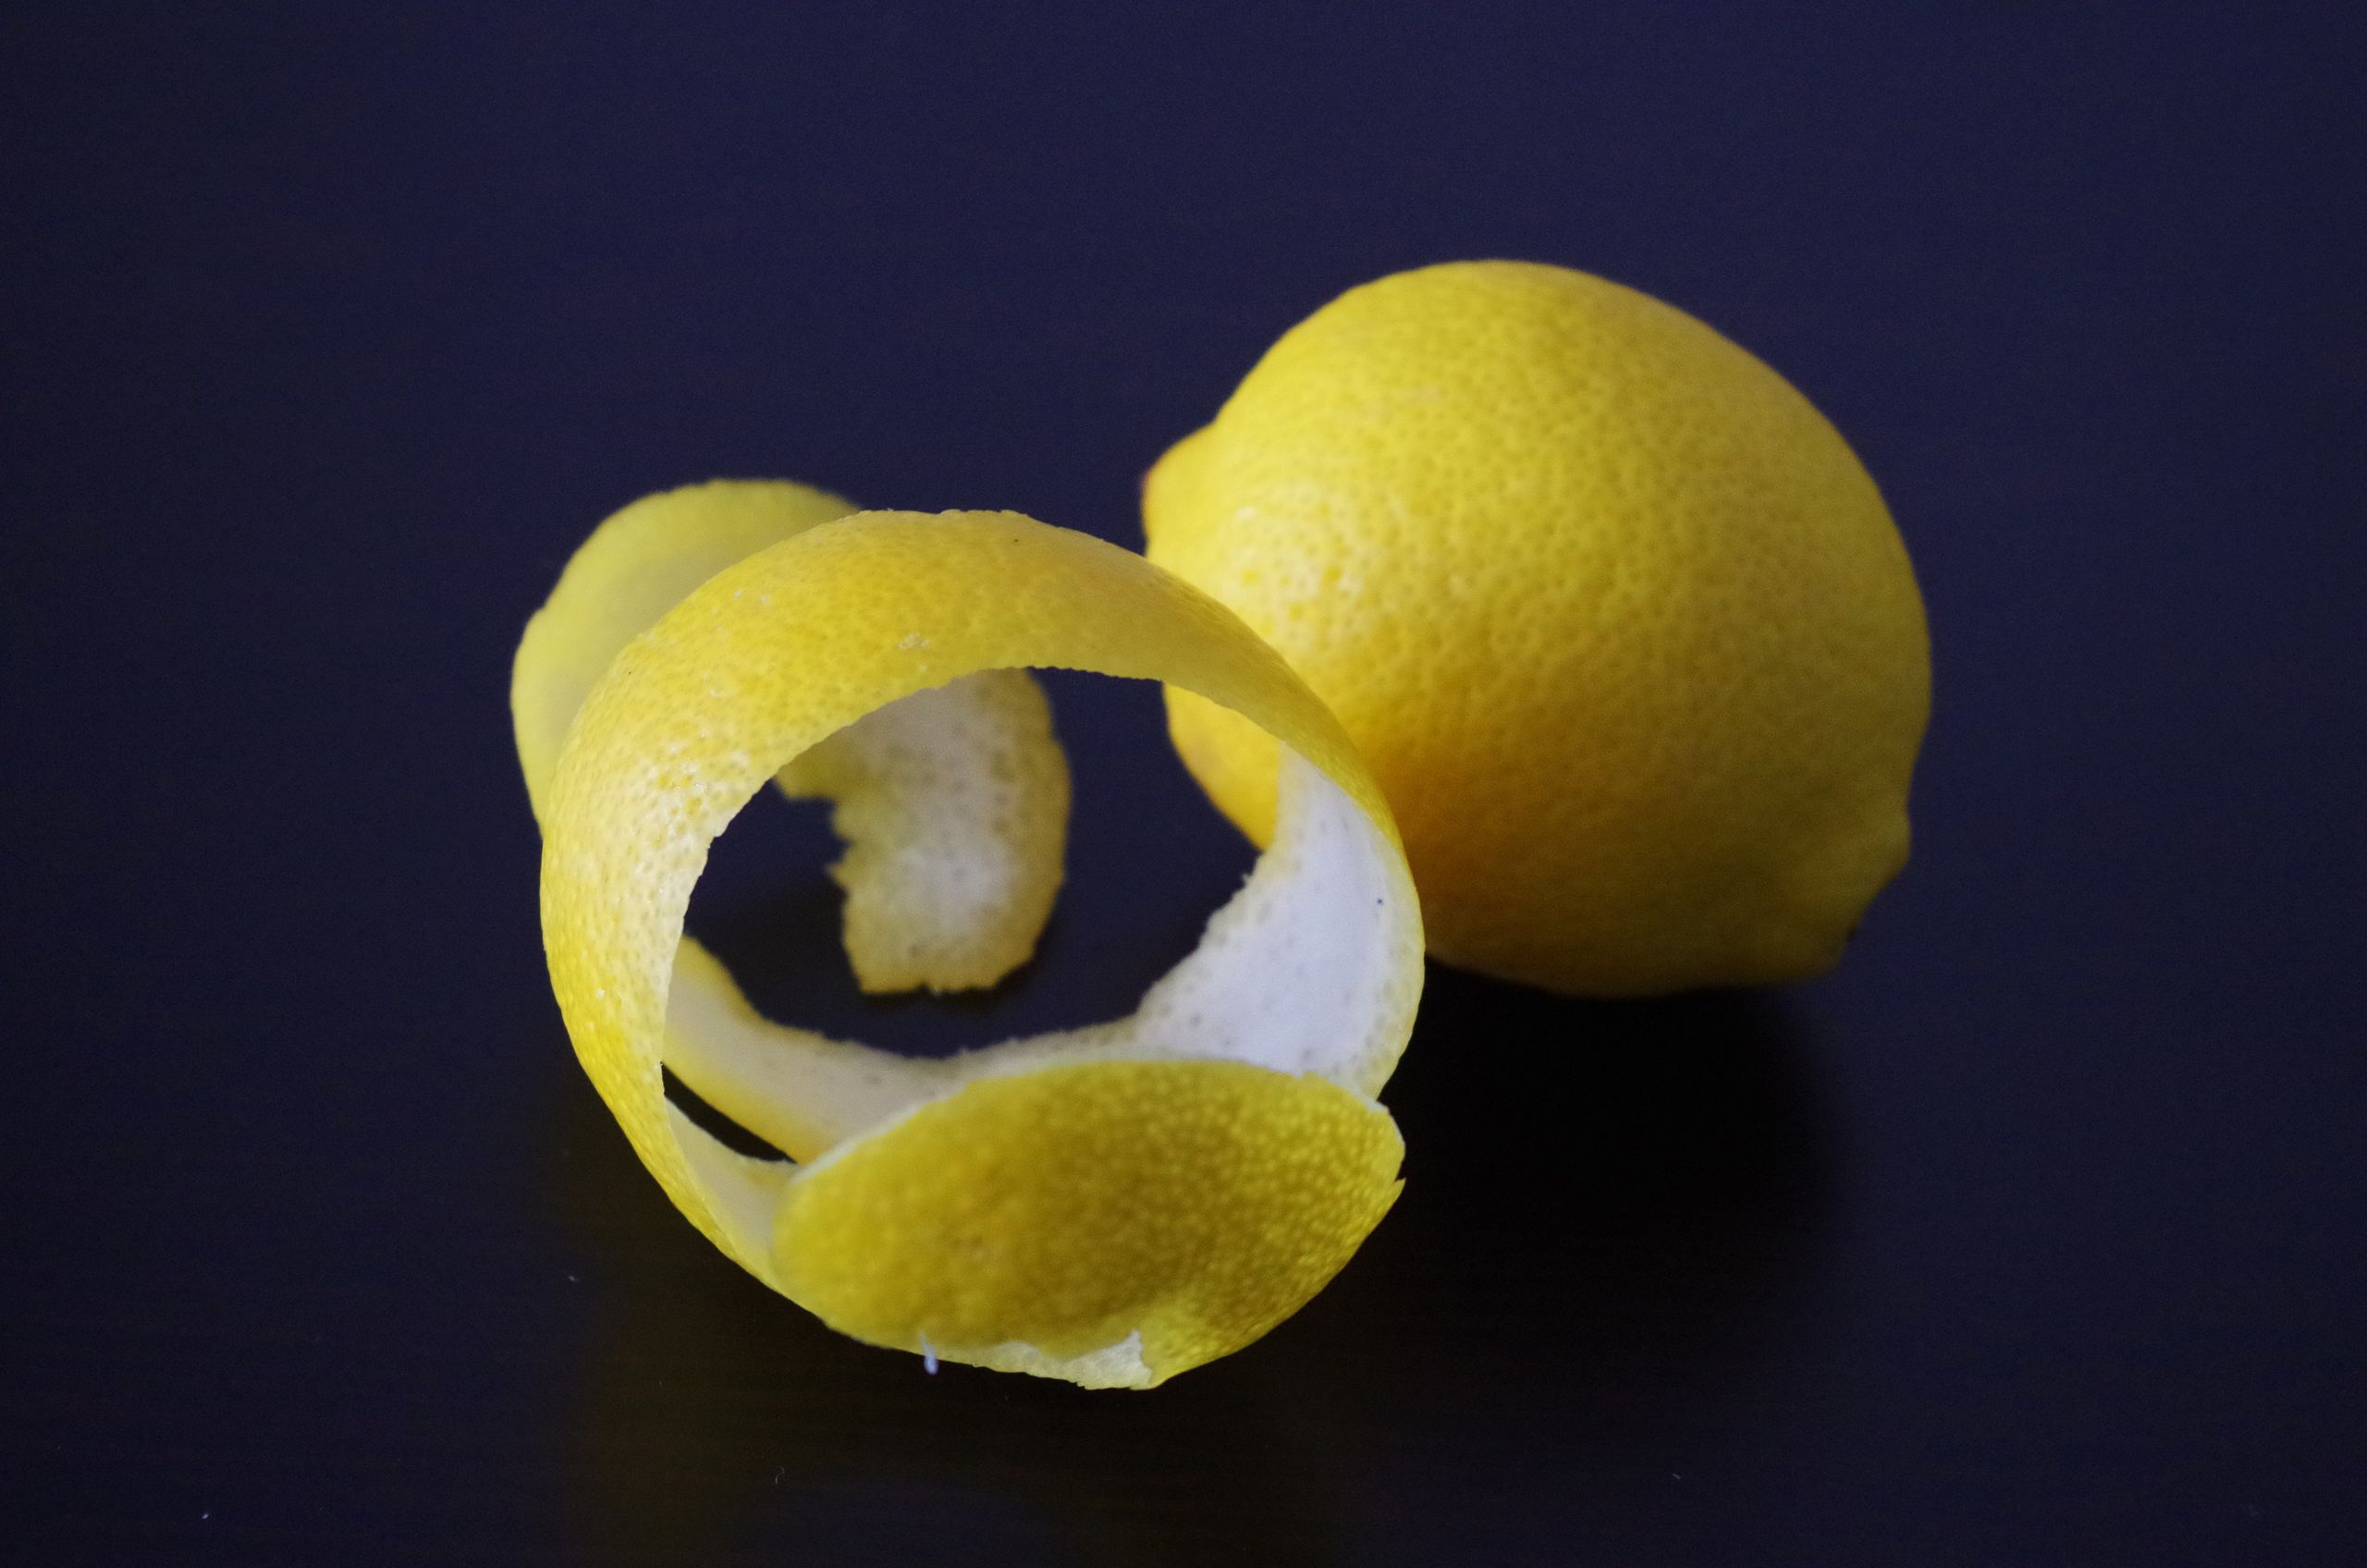 Cómo hacer velas aromáticas caseras de limón y romero